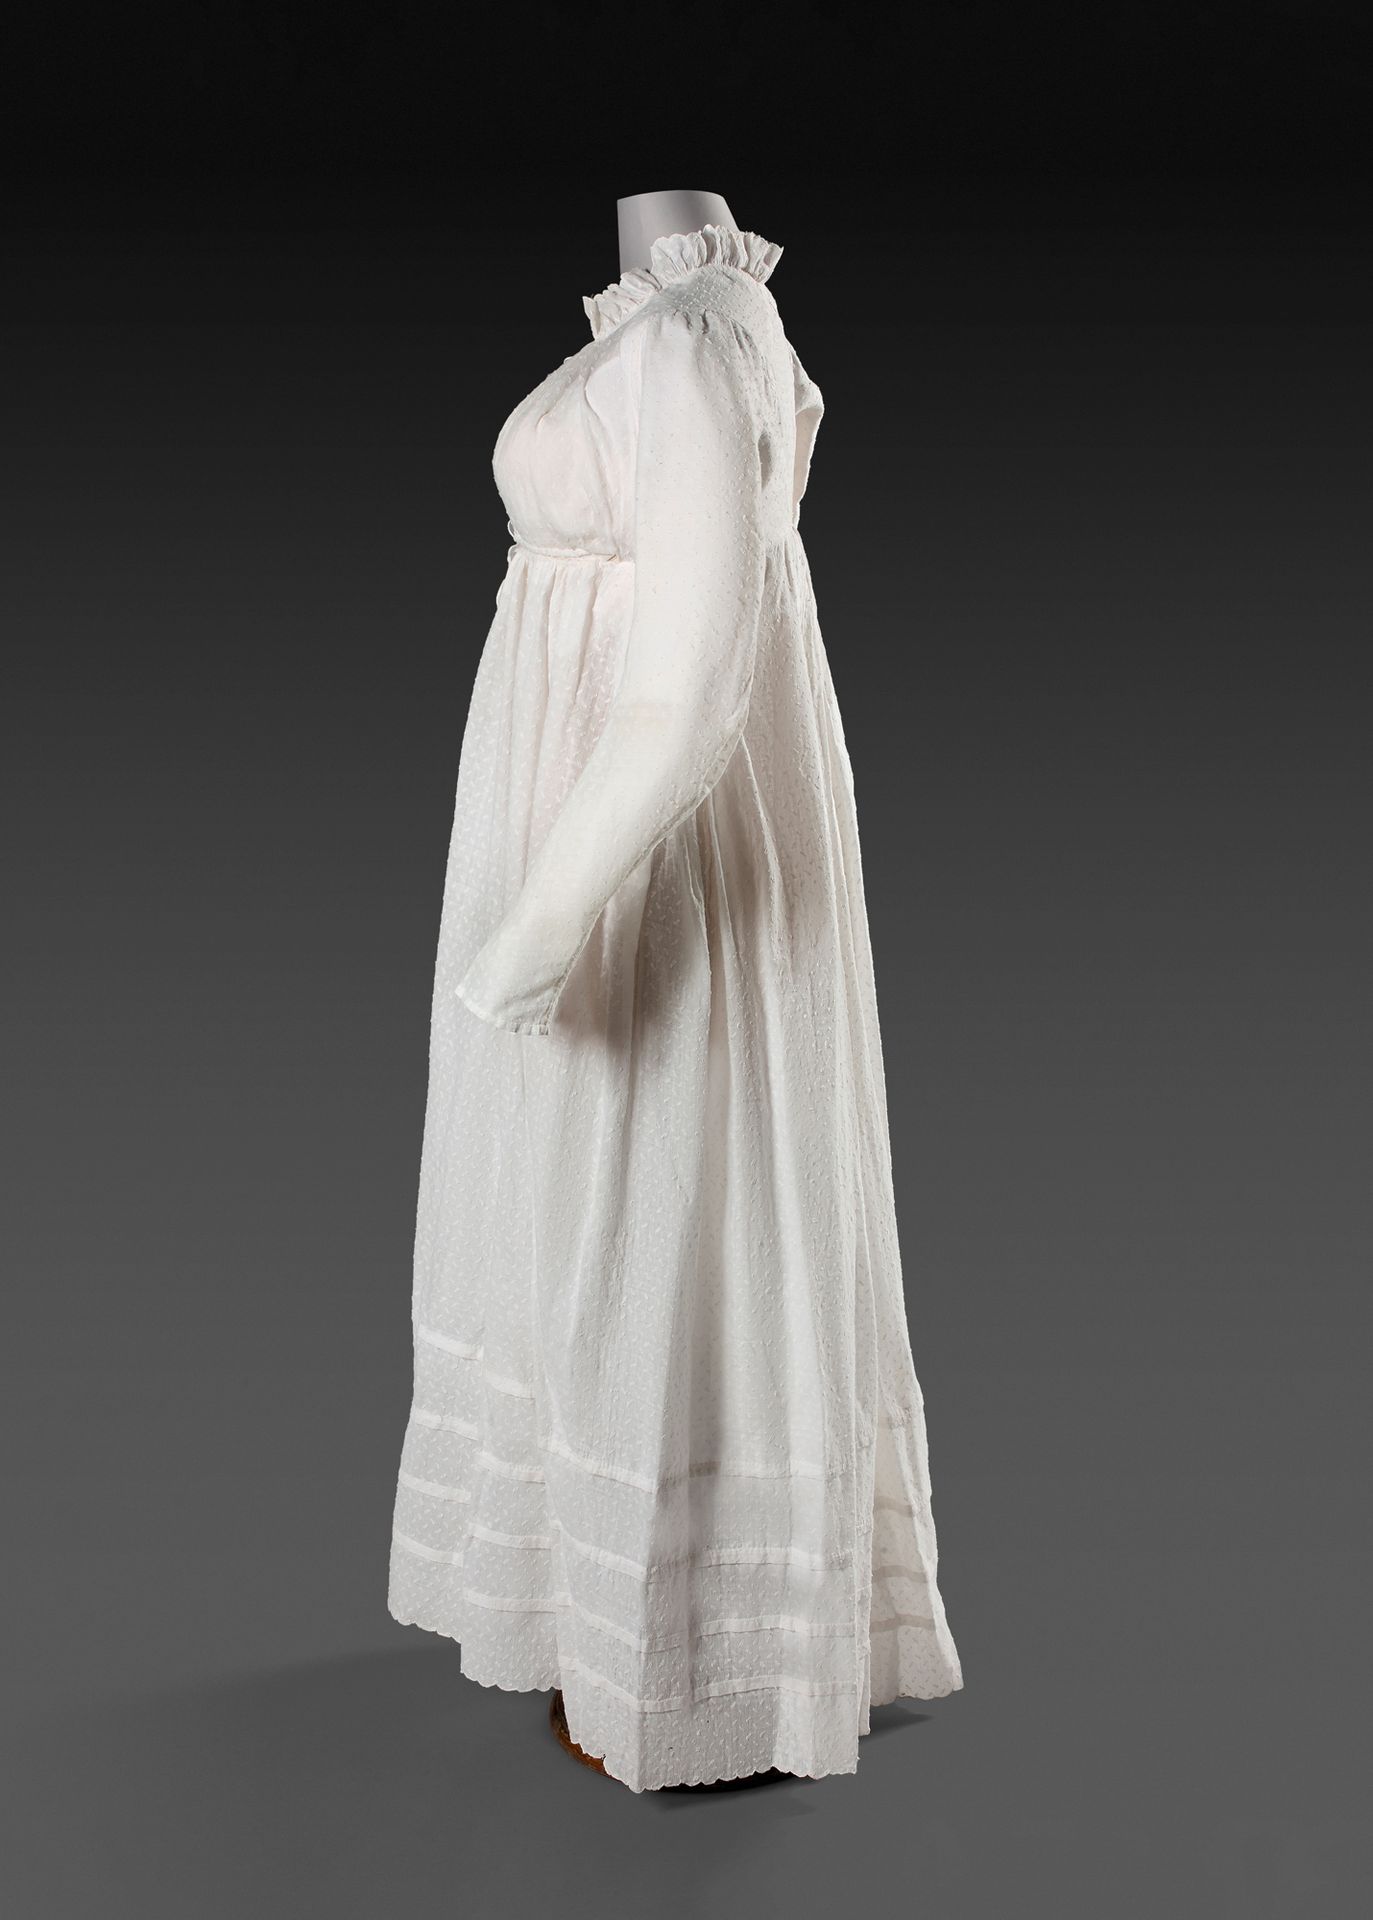 Null 异形薄纱礼服，第一帝国时期，约1812年。
带有米粒的异形棉布。直筒裙，长筒袖和荷叶边领。帘式前襟和2条领带。裙子底部有四个宗教褶皱，下摆有扇形，状况&hellip;